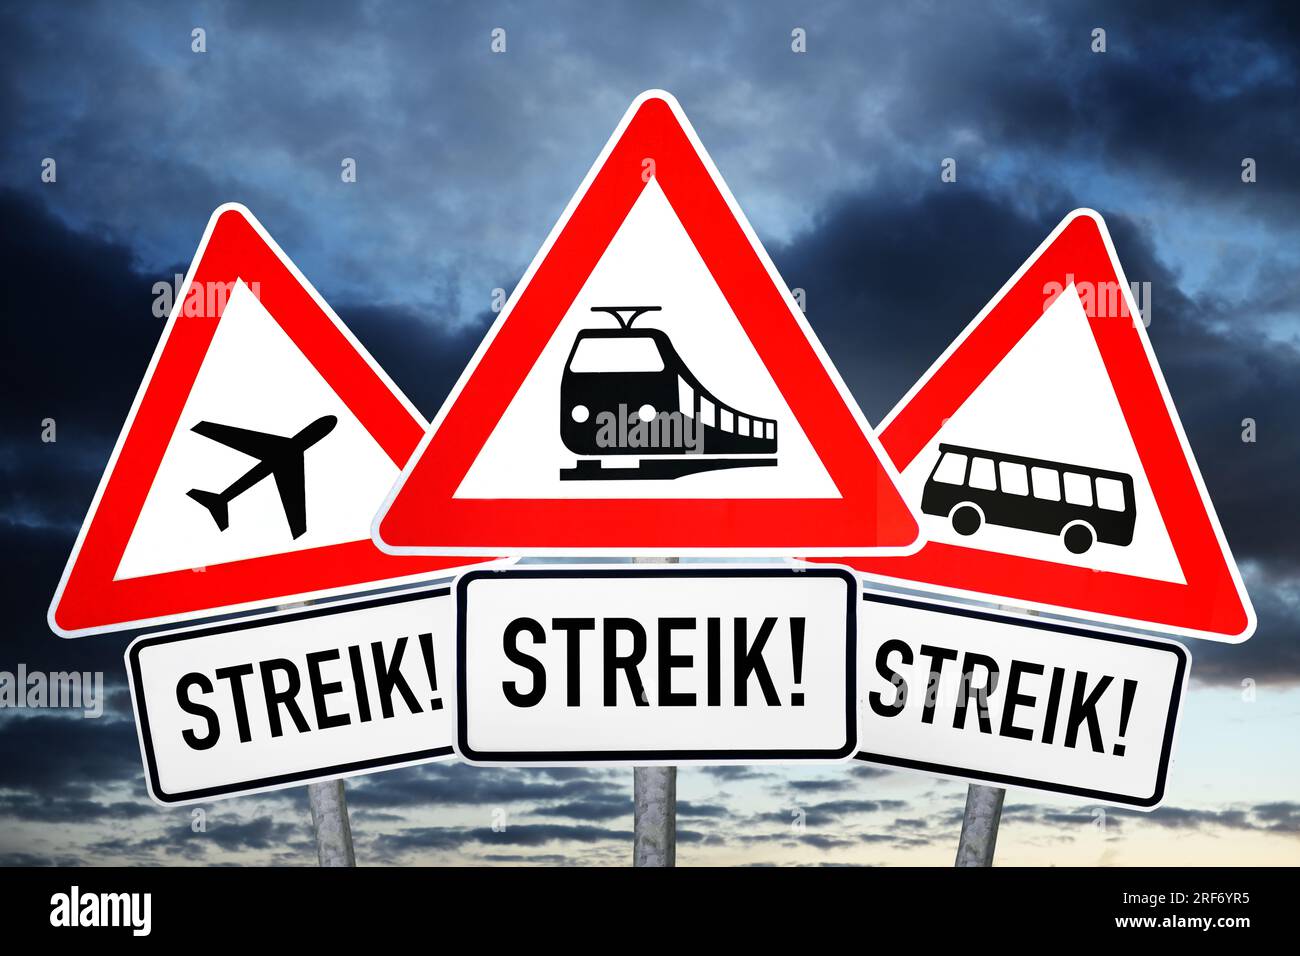 FOTOMONTAGE, Schilder mit Aufschrift Streik und Symbolen von Bahn, Bus und Flugzeug Foto Stock